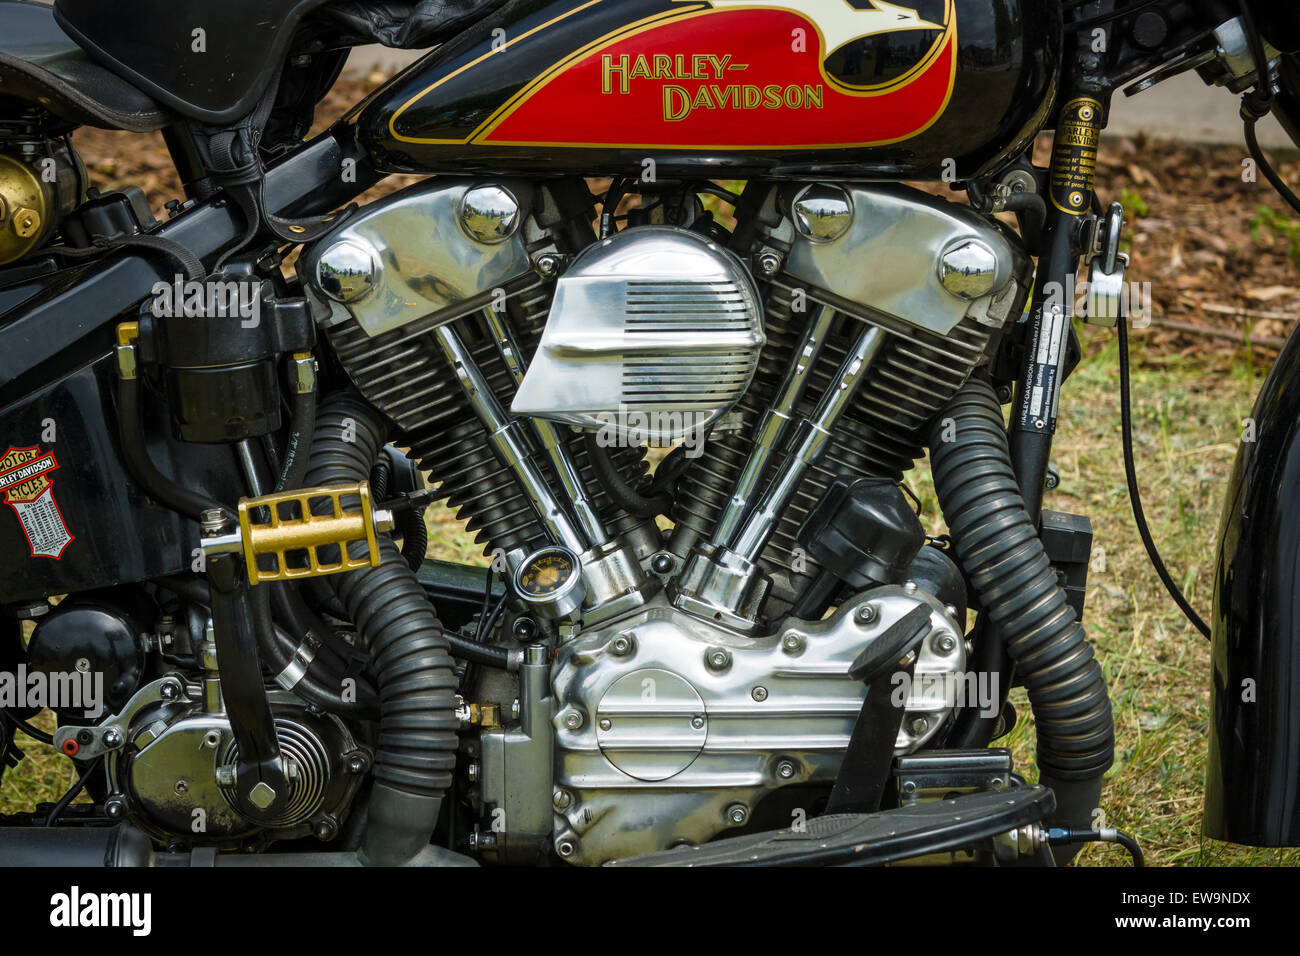 PAAREN IM GLIEN, Deutschland - 23. Mai 2015: Fragment einer Motorrad Harley-Davidson-Nahaufnahme. Die Oldtimer-Show im MAFZ. Stockfoto